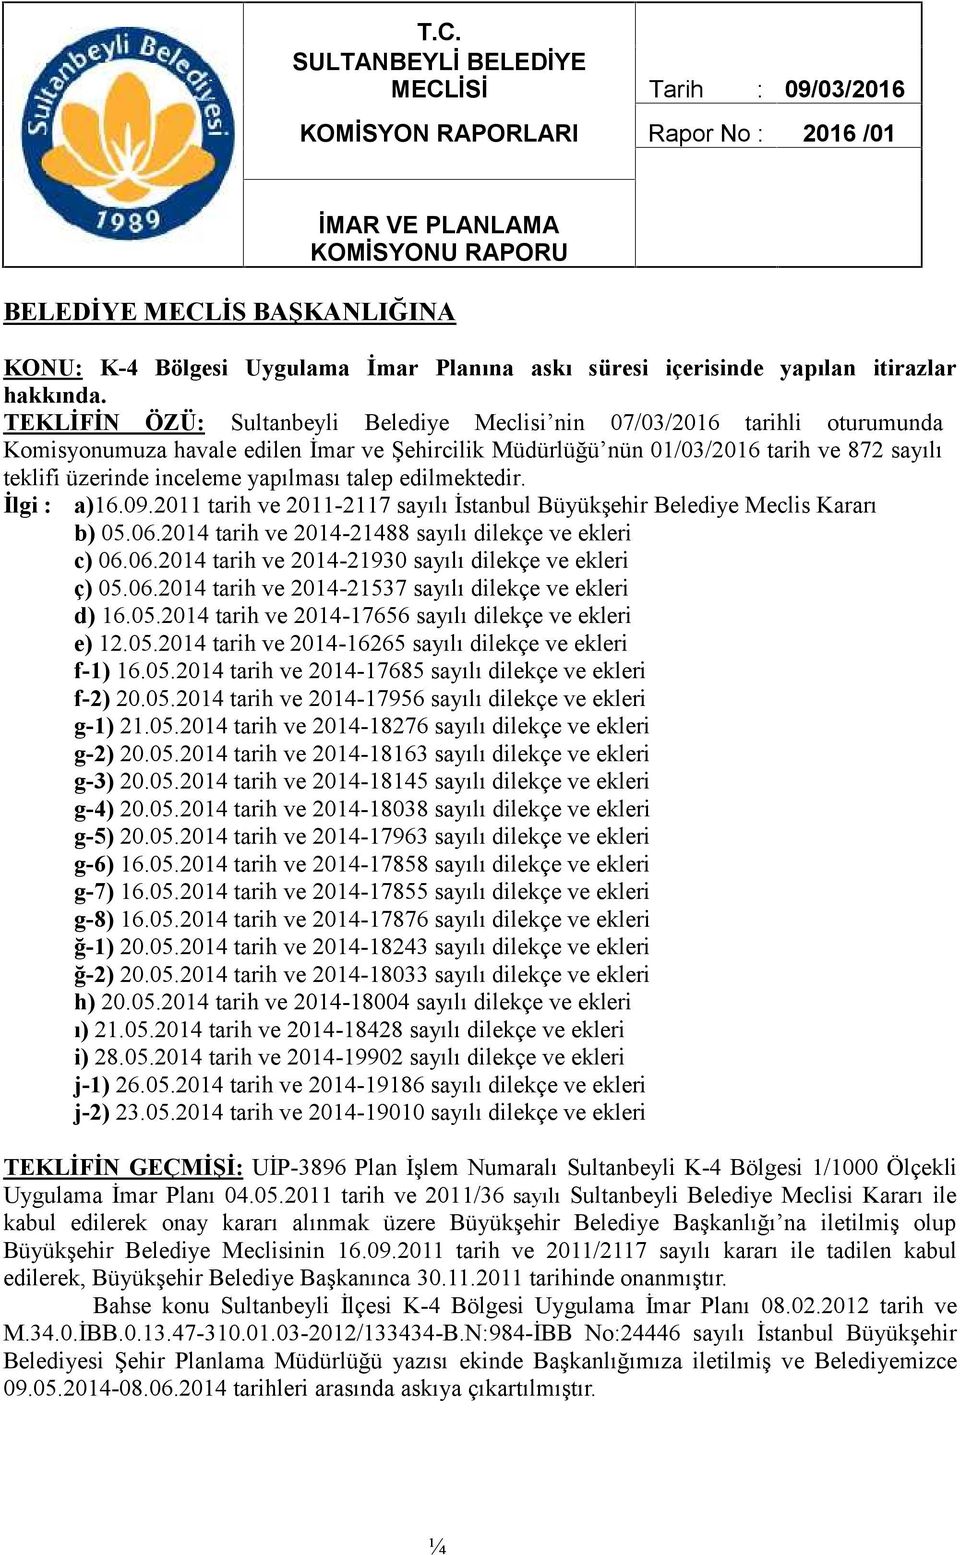 TEKLİFİN ÖZÜ: Sultanbeyli Belediye Meclisi nin 07/03/2016 tarihli oturumunda Komisyonumuza havale edilen İmar ve Şehircilik Müdürlüğü nün 01/03/2016 tarih ve 872 sayılı teklifi üzerinde inceleme